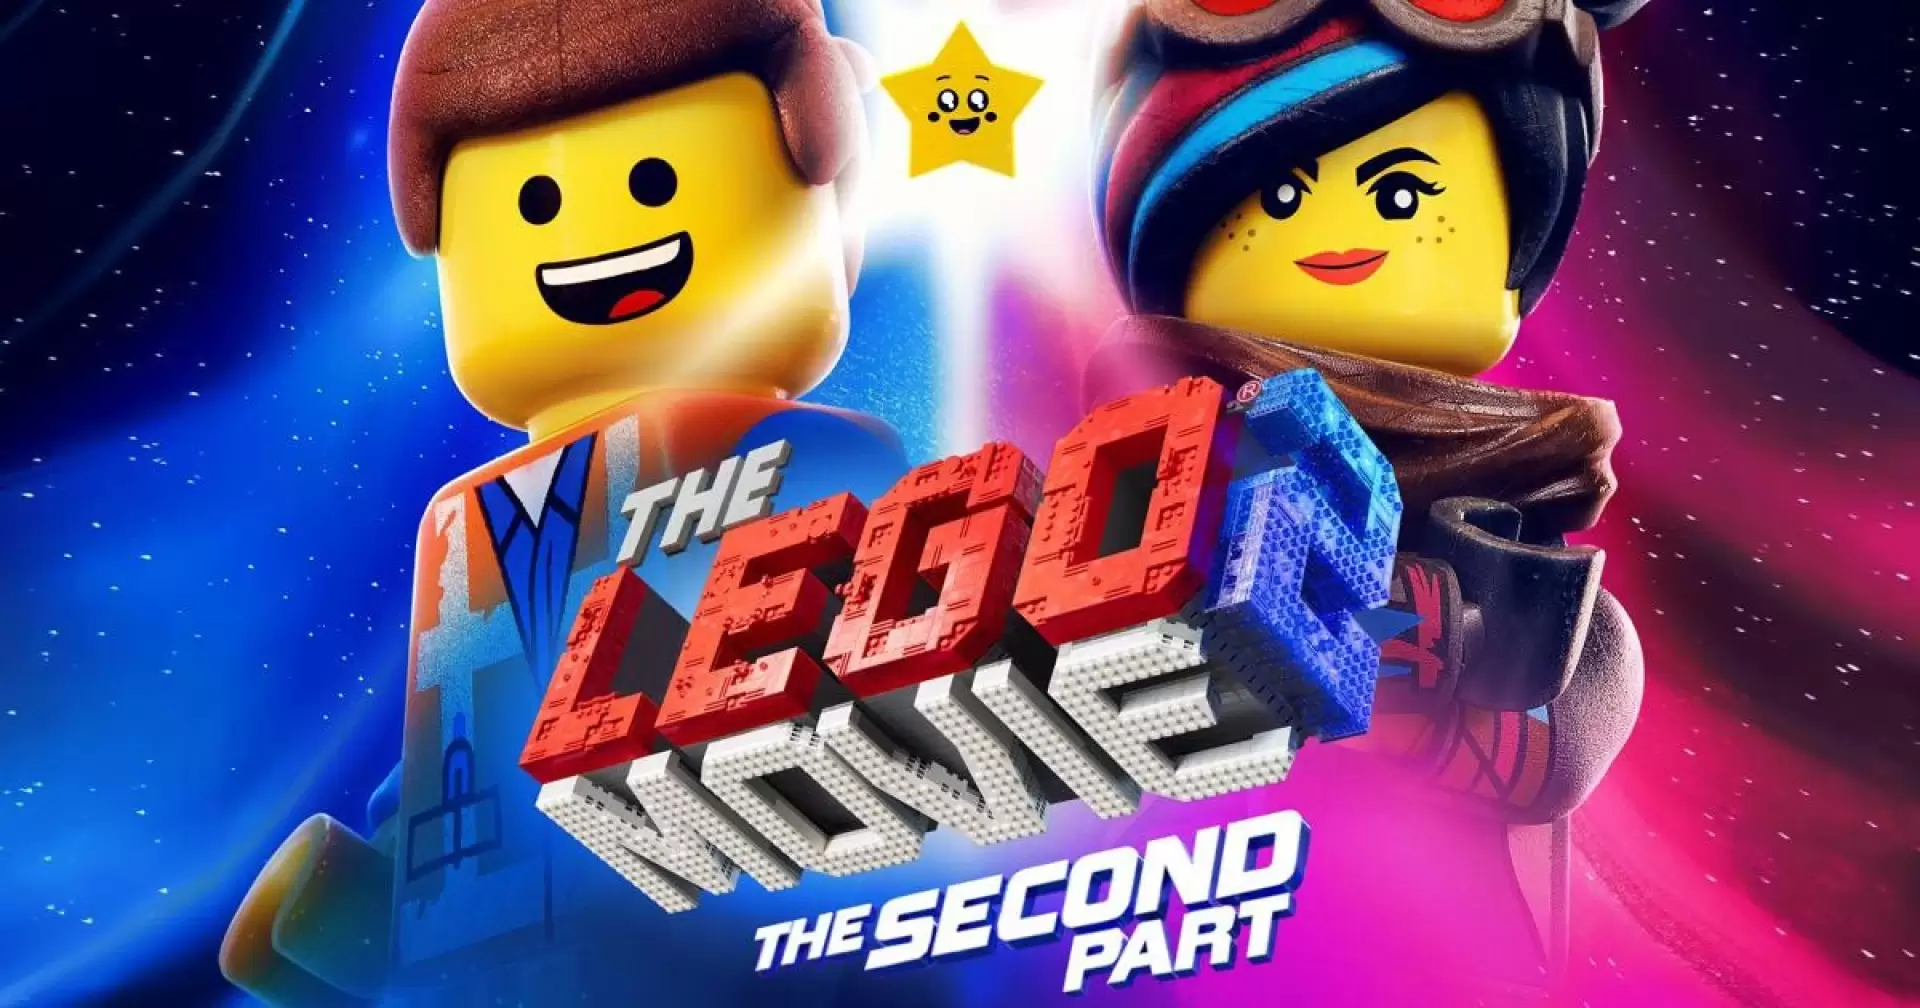 دانلود انیمیشن The Lego Movie 2: The Second Part 2019 (فیلم لگو ۲: بخش دوم) با زیرنویس فارسی و تماشای آنلاین